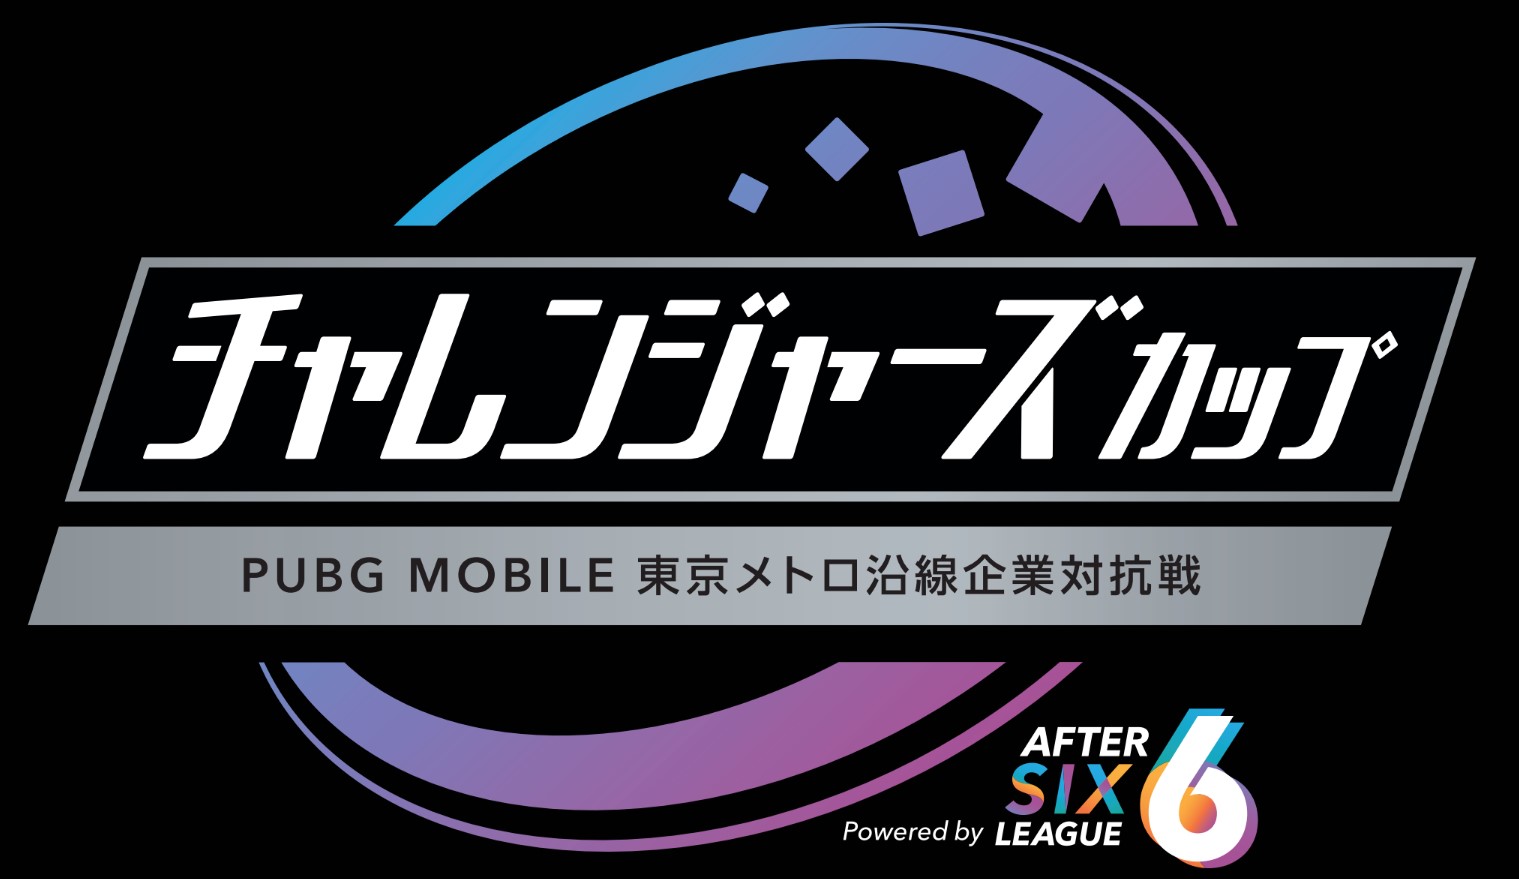 オンラインeスポーツ大会社会人チャレンジャーズカップ～PUBG MOBILE東京メトロ沿線企業対抗戦～Powered by AFTER 6 LEAGUEを開催します！